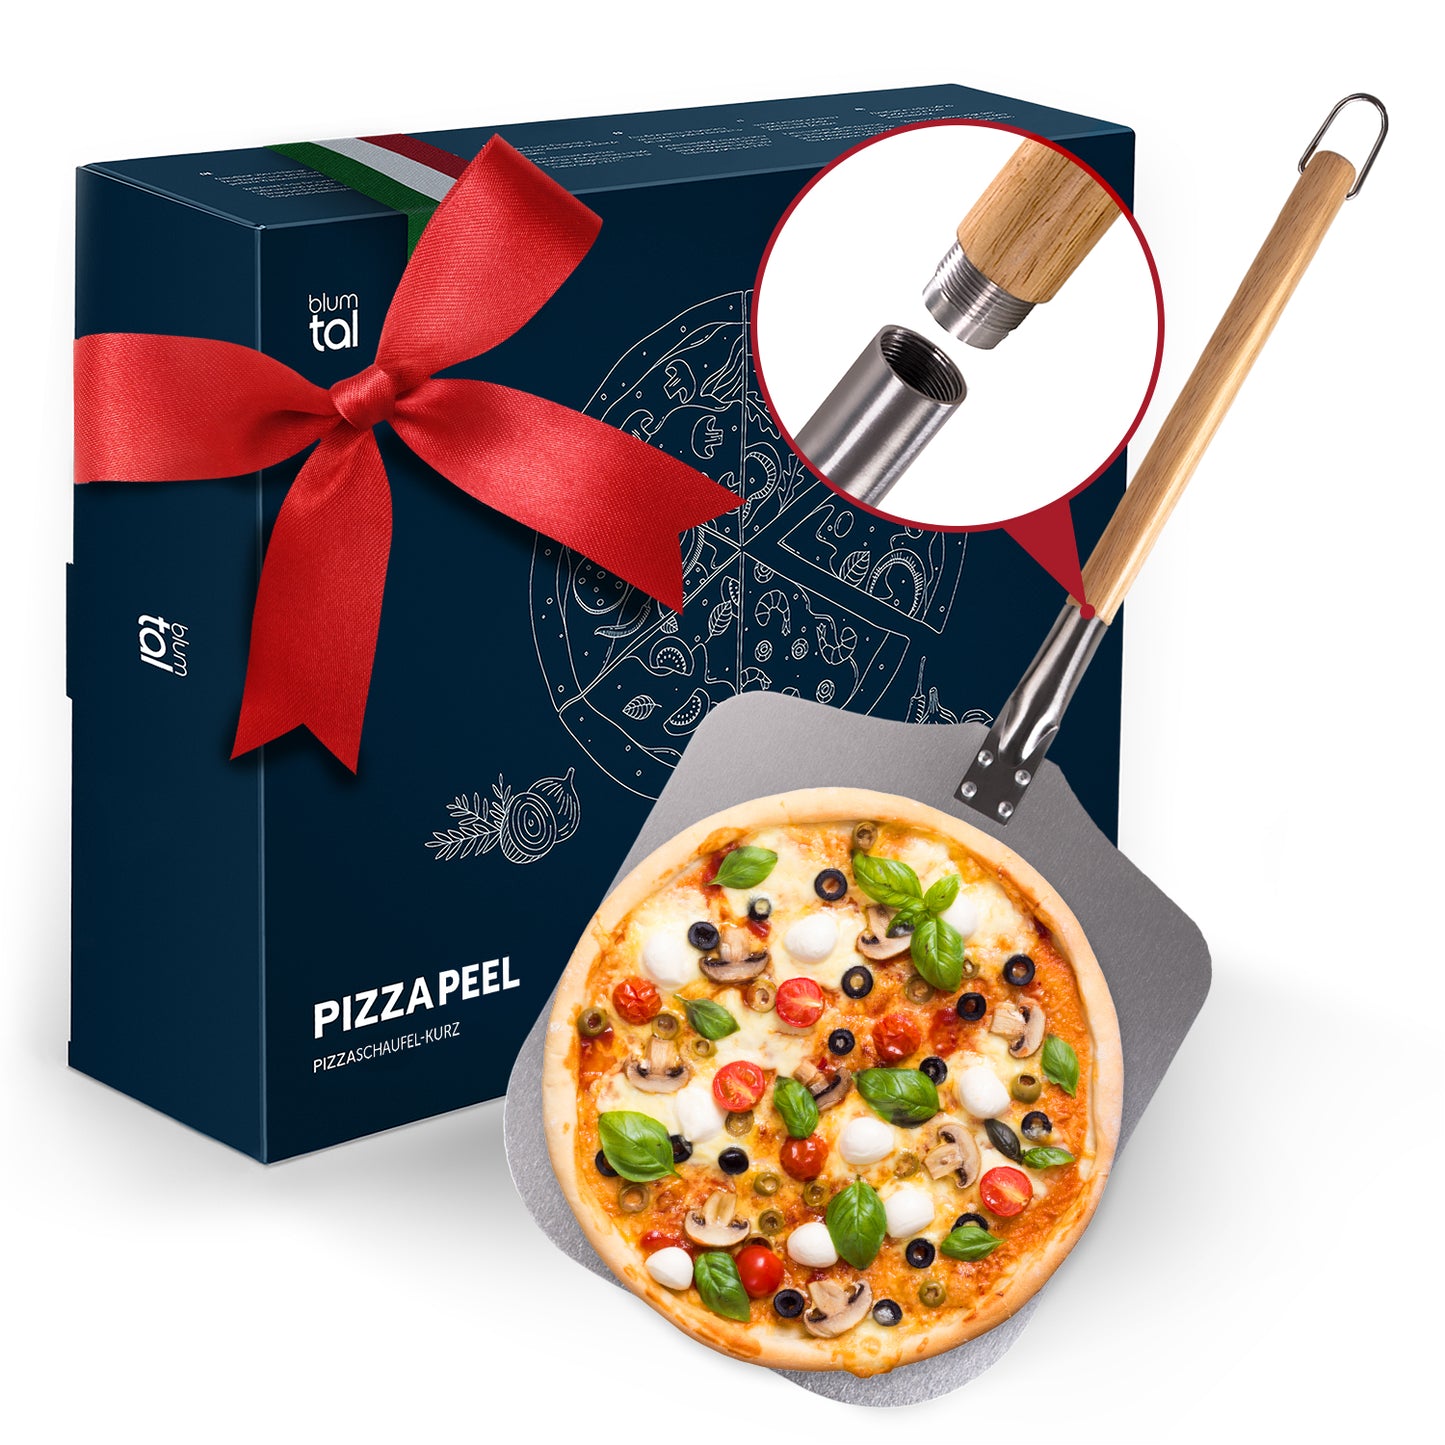 Hochwertige Pizzaschaufel aus Metall mit Holzgriff und verschraubbarer Verbindung, inklusive Geschenkbox mit roter Schleife und stilvollem Pizza-Motiv